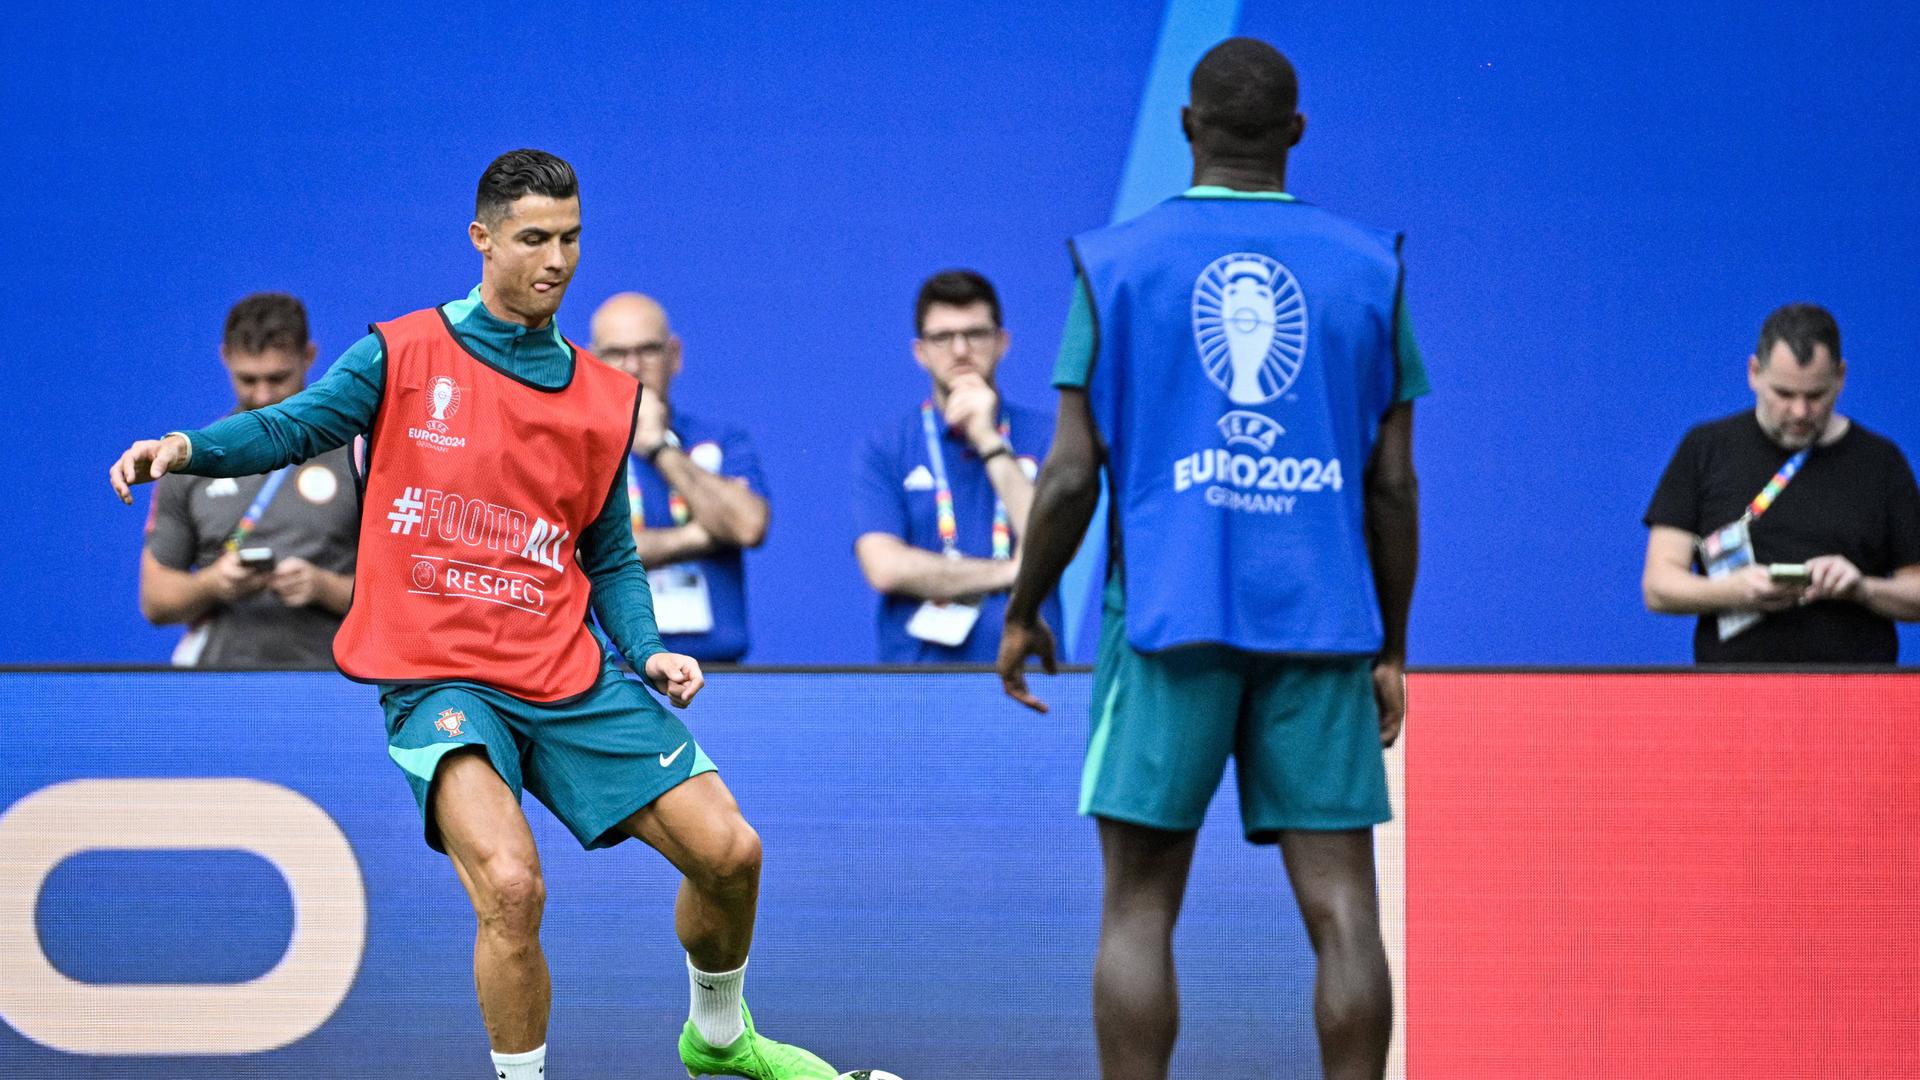 Cristiano Ronaldo steht auf einem Fußballplatz und passt einen Ball zu einem Mitspieler, der mit dem Rücken zur Kamera steht. Ronaldo trägt ein rotes Trainingsleibchen über seinem blauen Trikot. Er ist kurz davor, den ball mit seinem Fuß zu berühren. Er streckt konzentriert die Zunge heraus. 